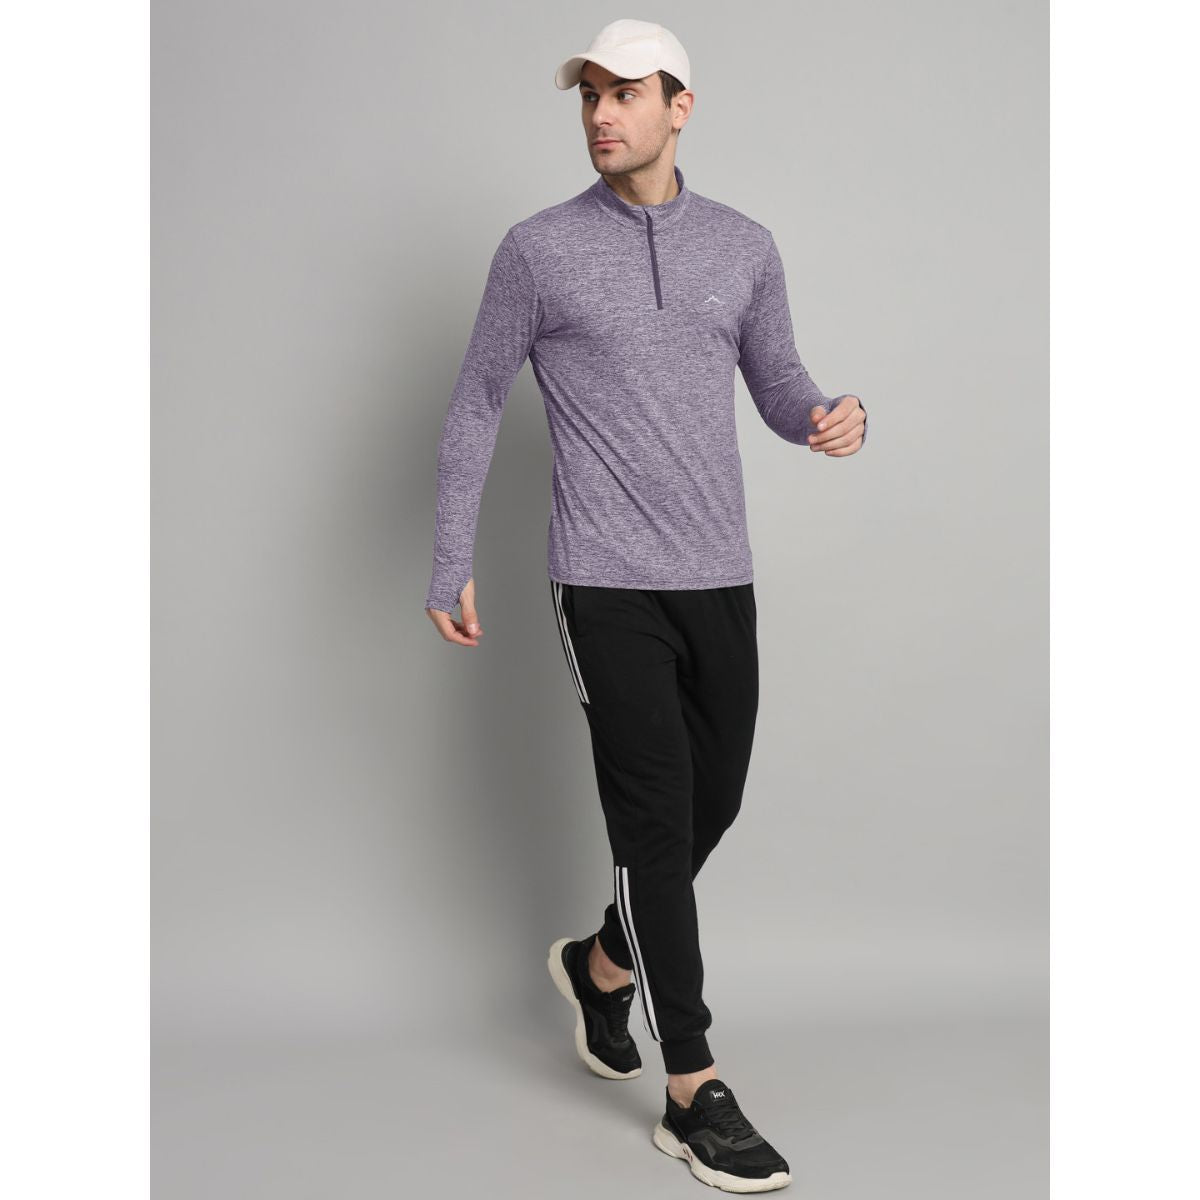 Men's Nomadic Full Sleeves T-Shirt / Baselayer - Purple Gray 2